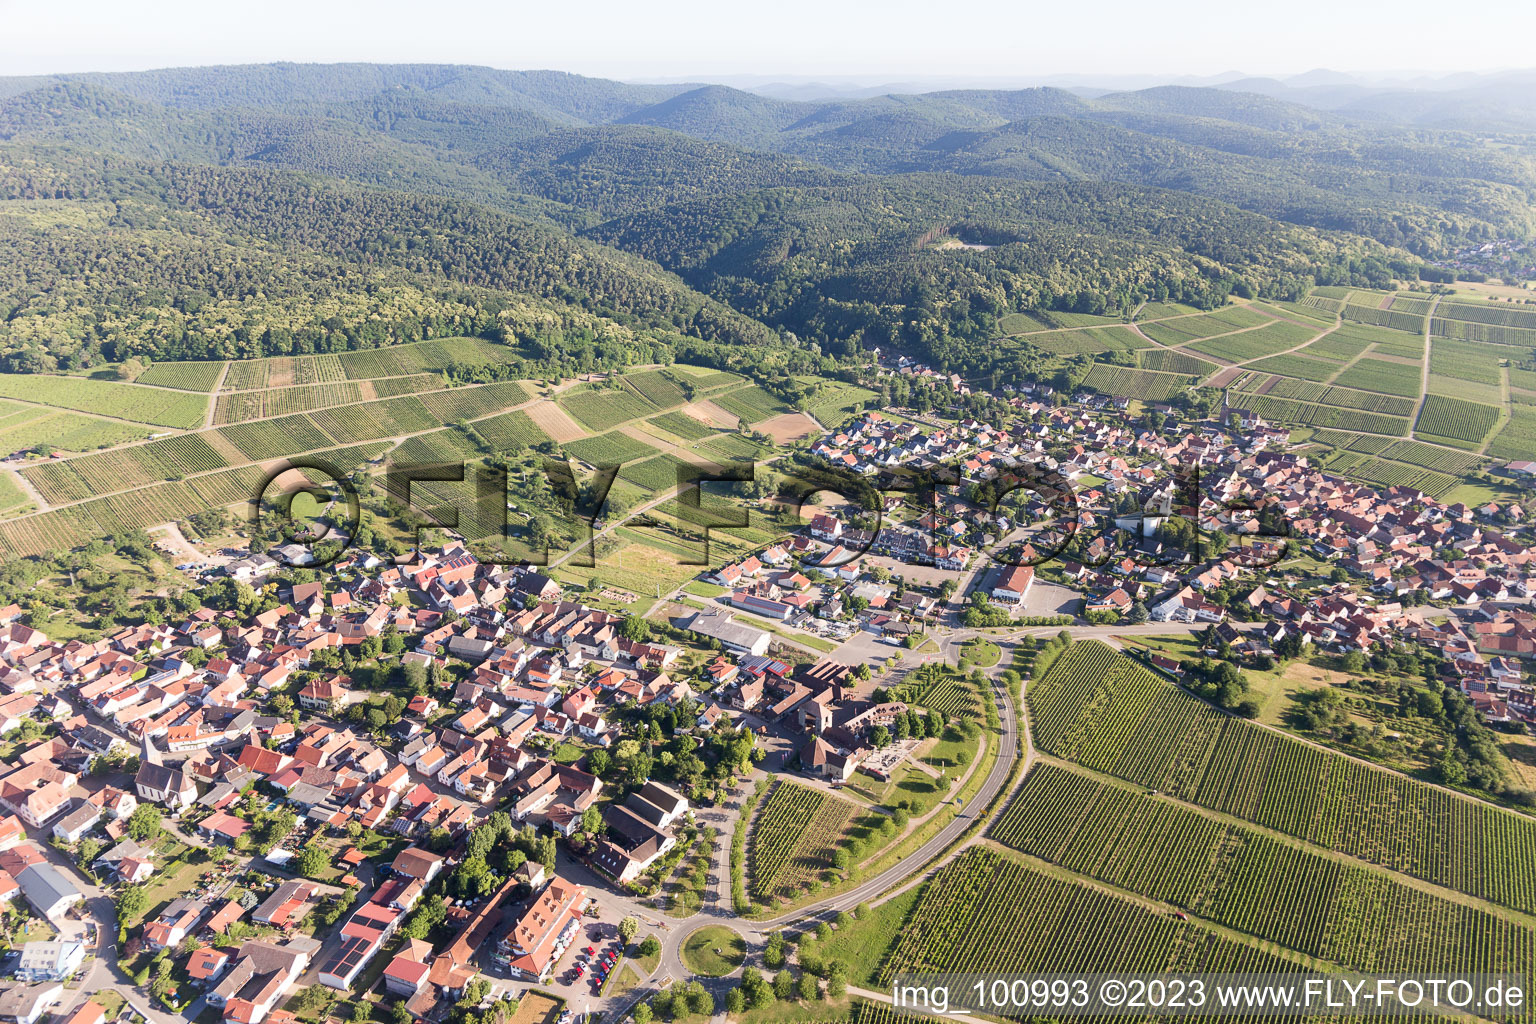 District Schweigen in Schweigen-Rechtenbach in the state Rhineland-Palatinate, Germany seen from a drone